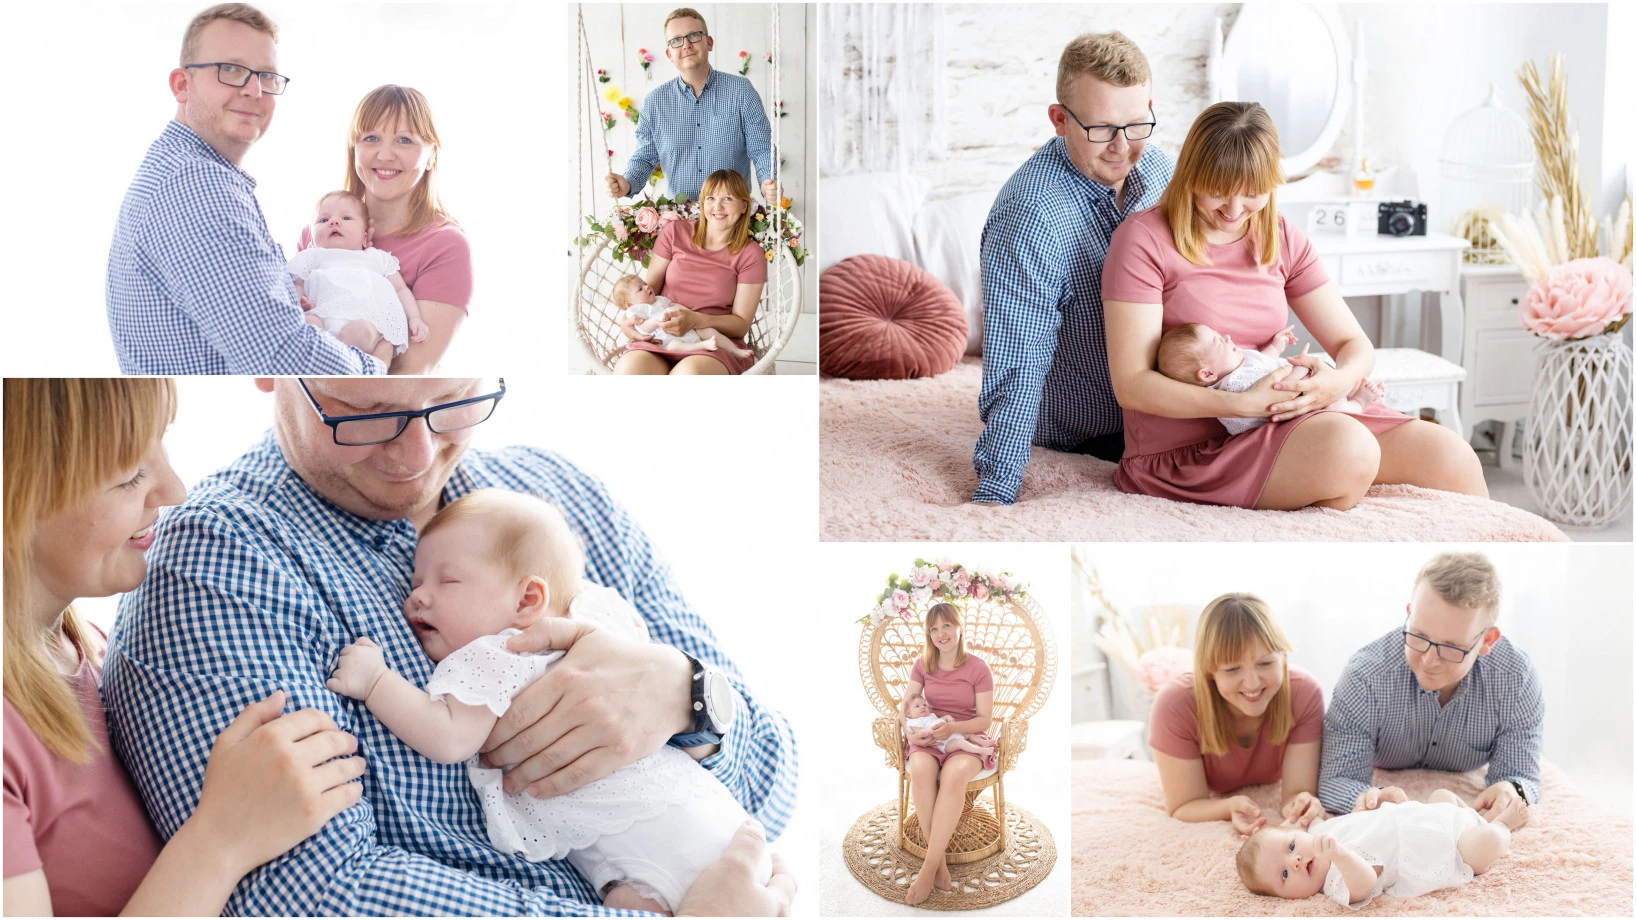 fotograf bialystok omnium-agency portfolio zdjecia rodzinne fotografia rodzinna sesja